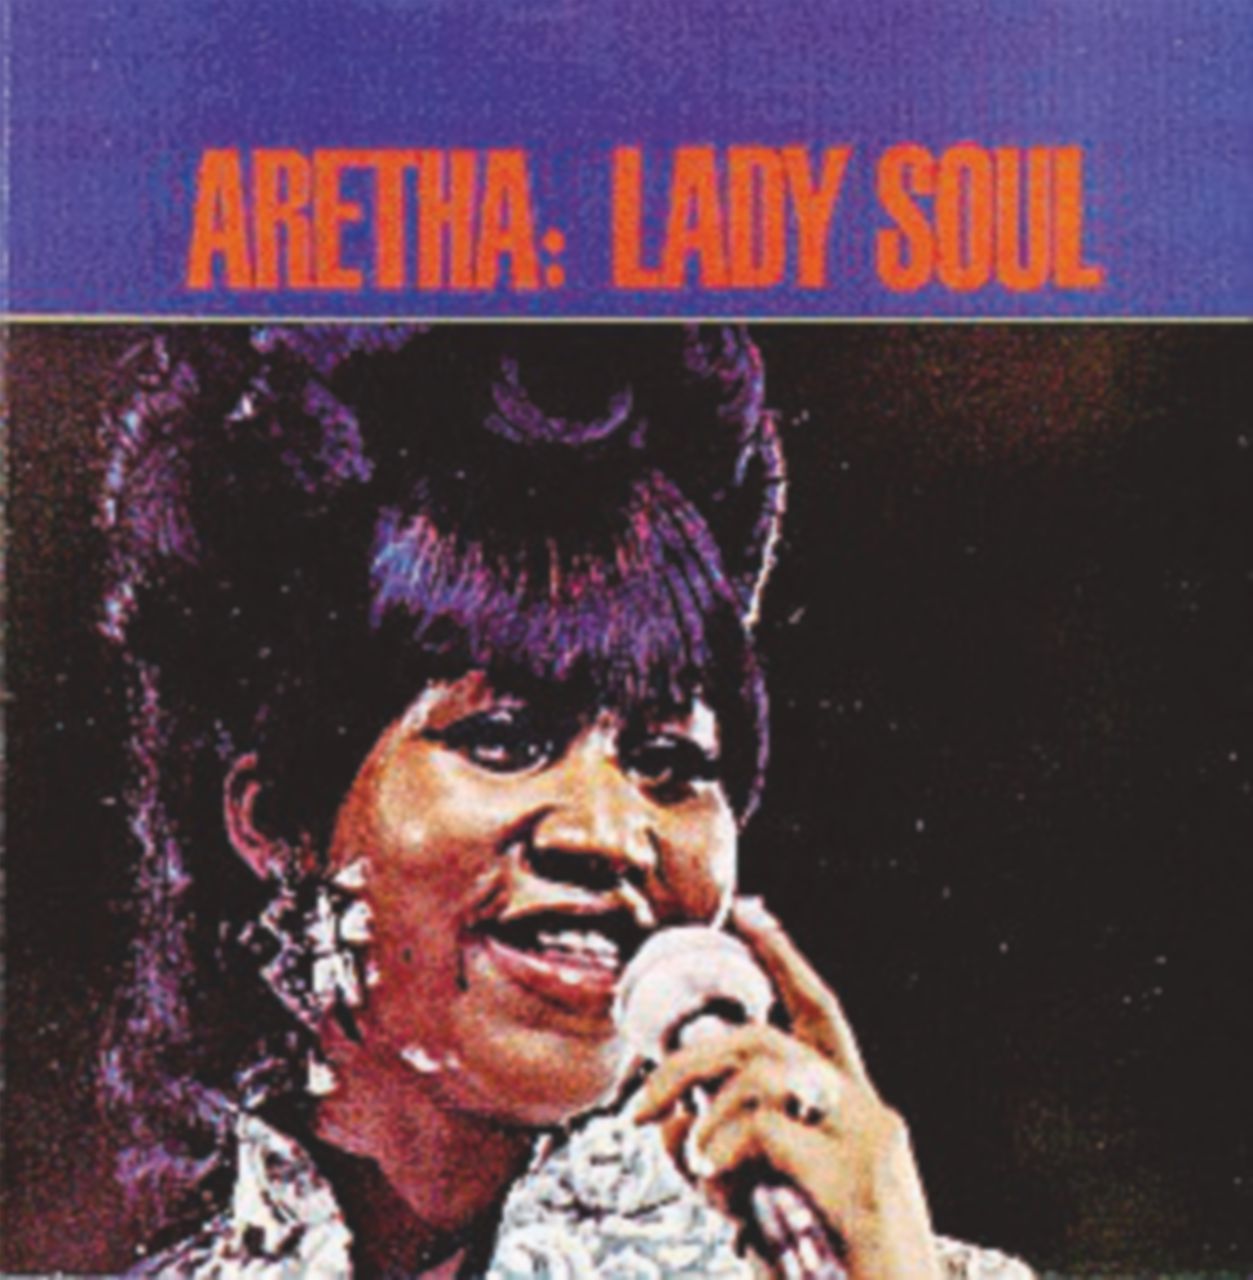 Copertina di “Lady Soul”, Aretha Franklin vola altissima